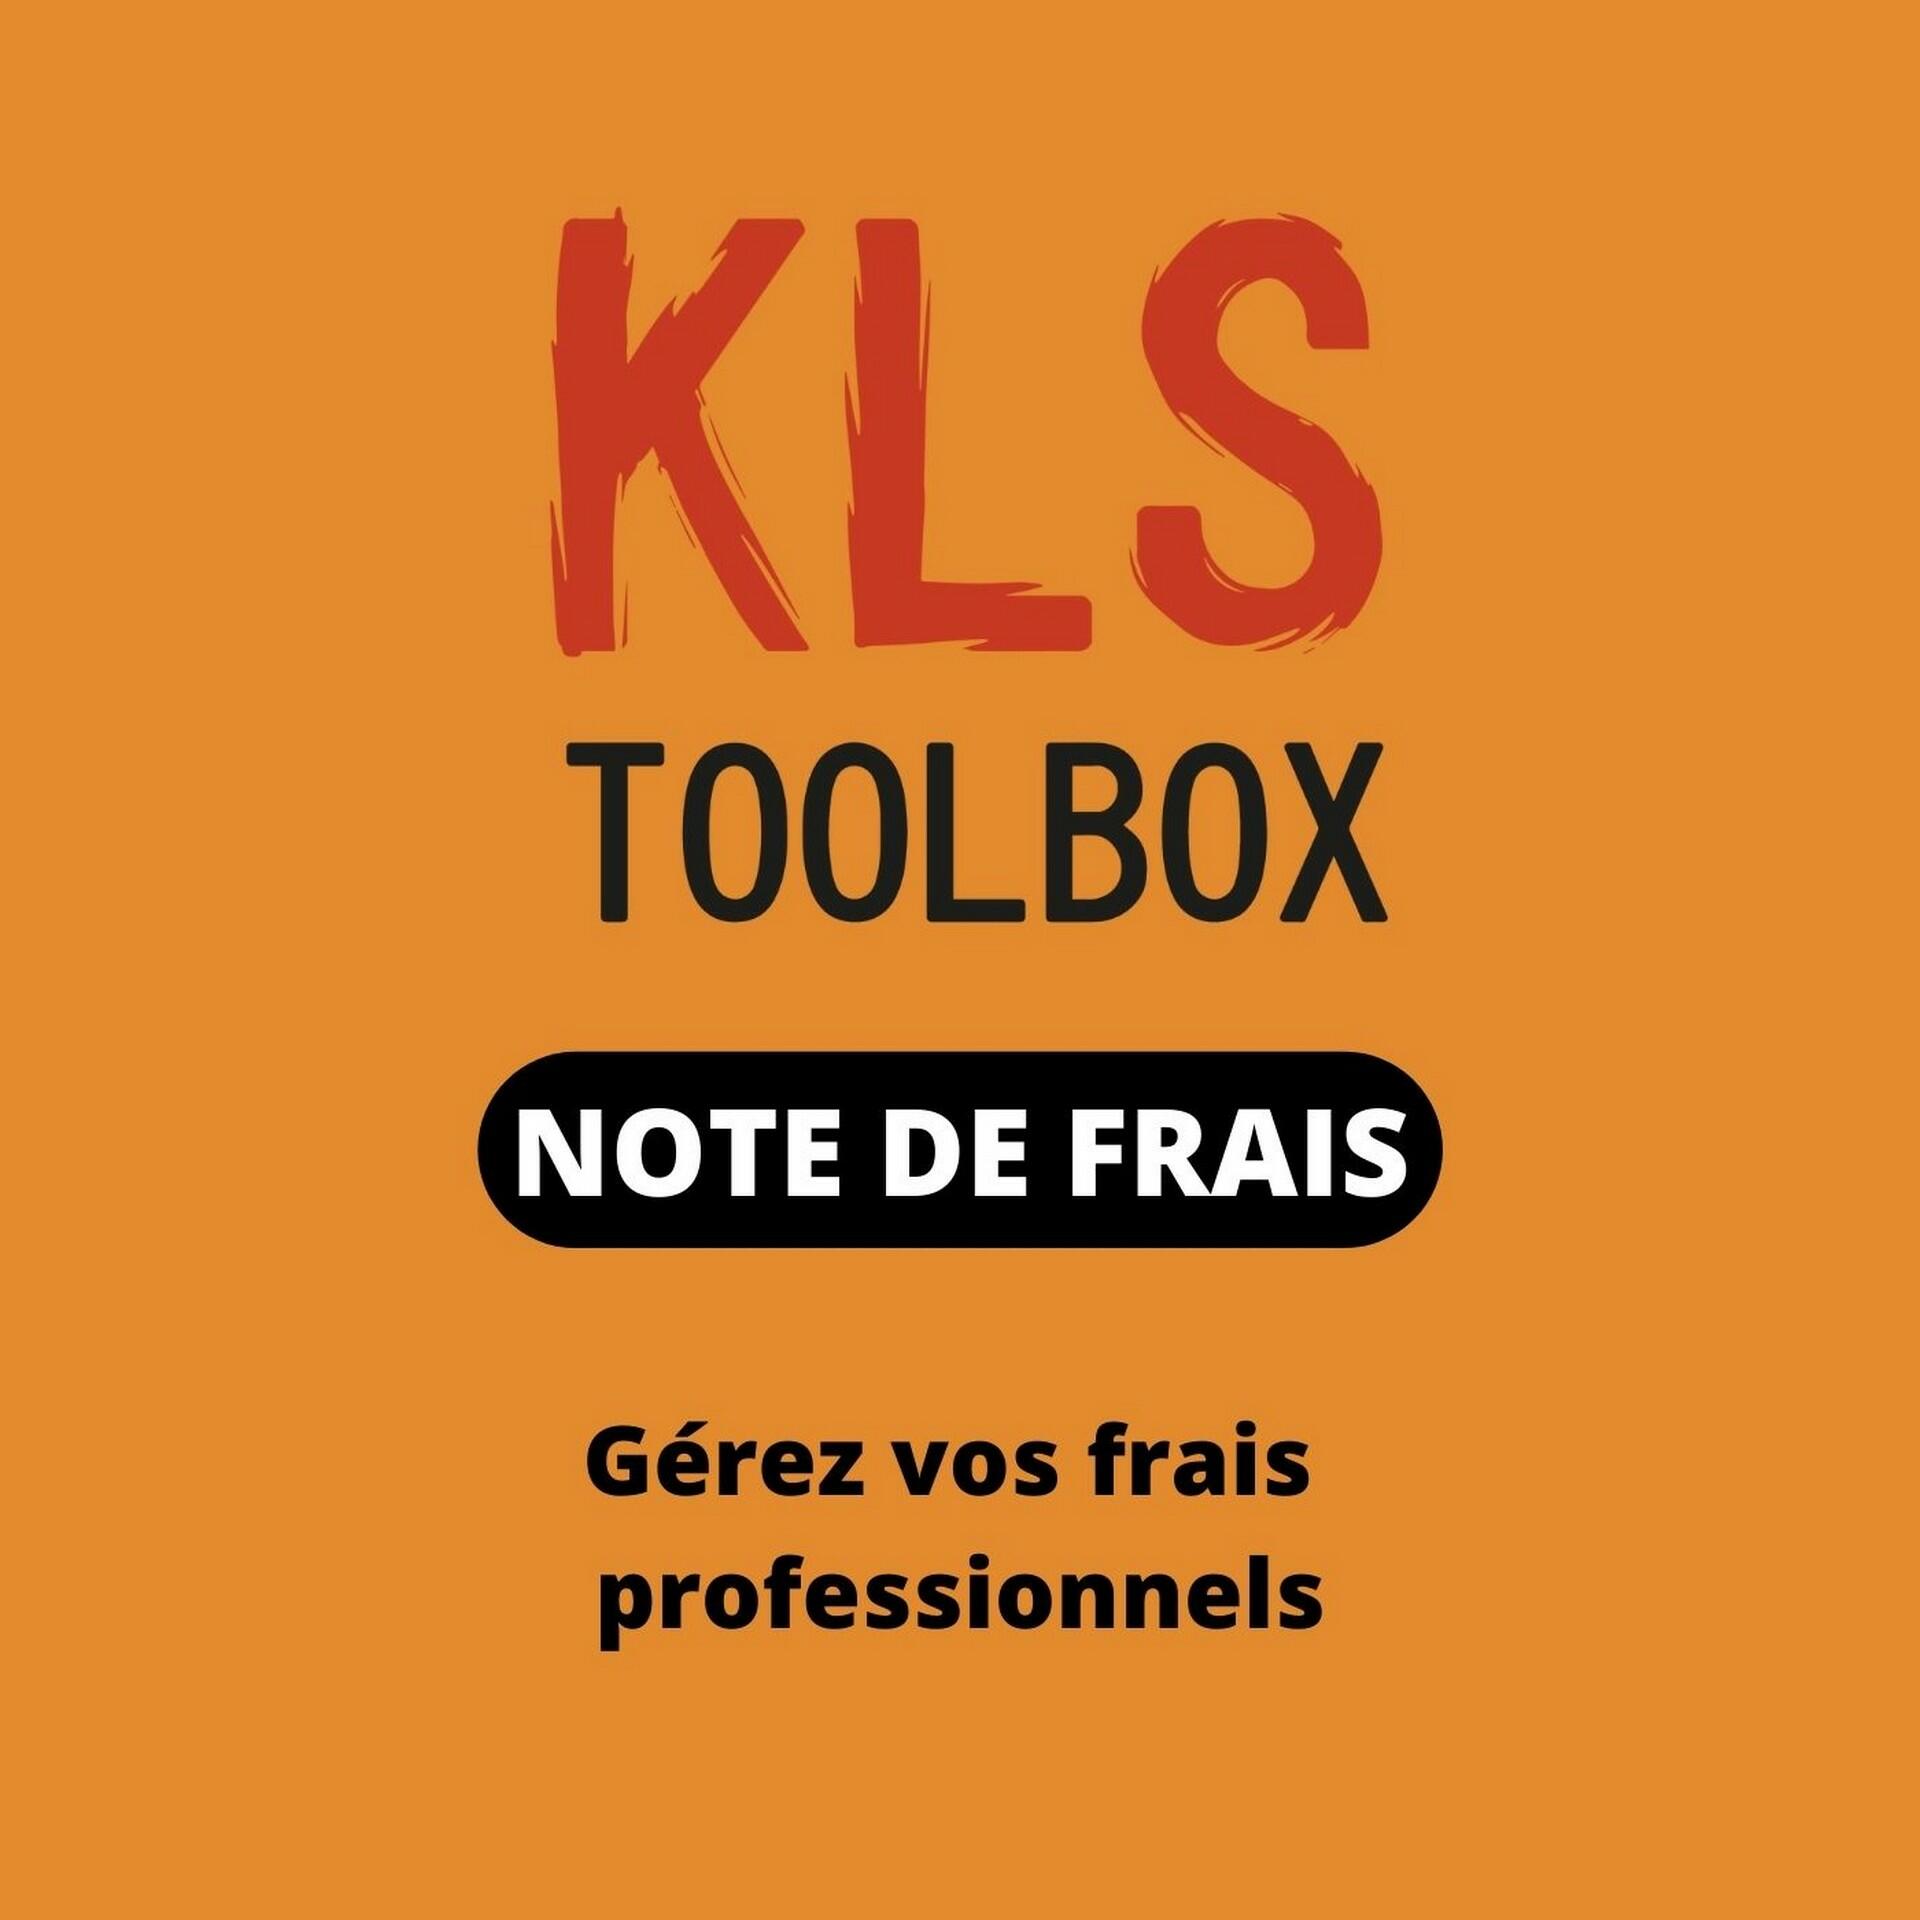 xtep kls toolbox expense report